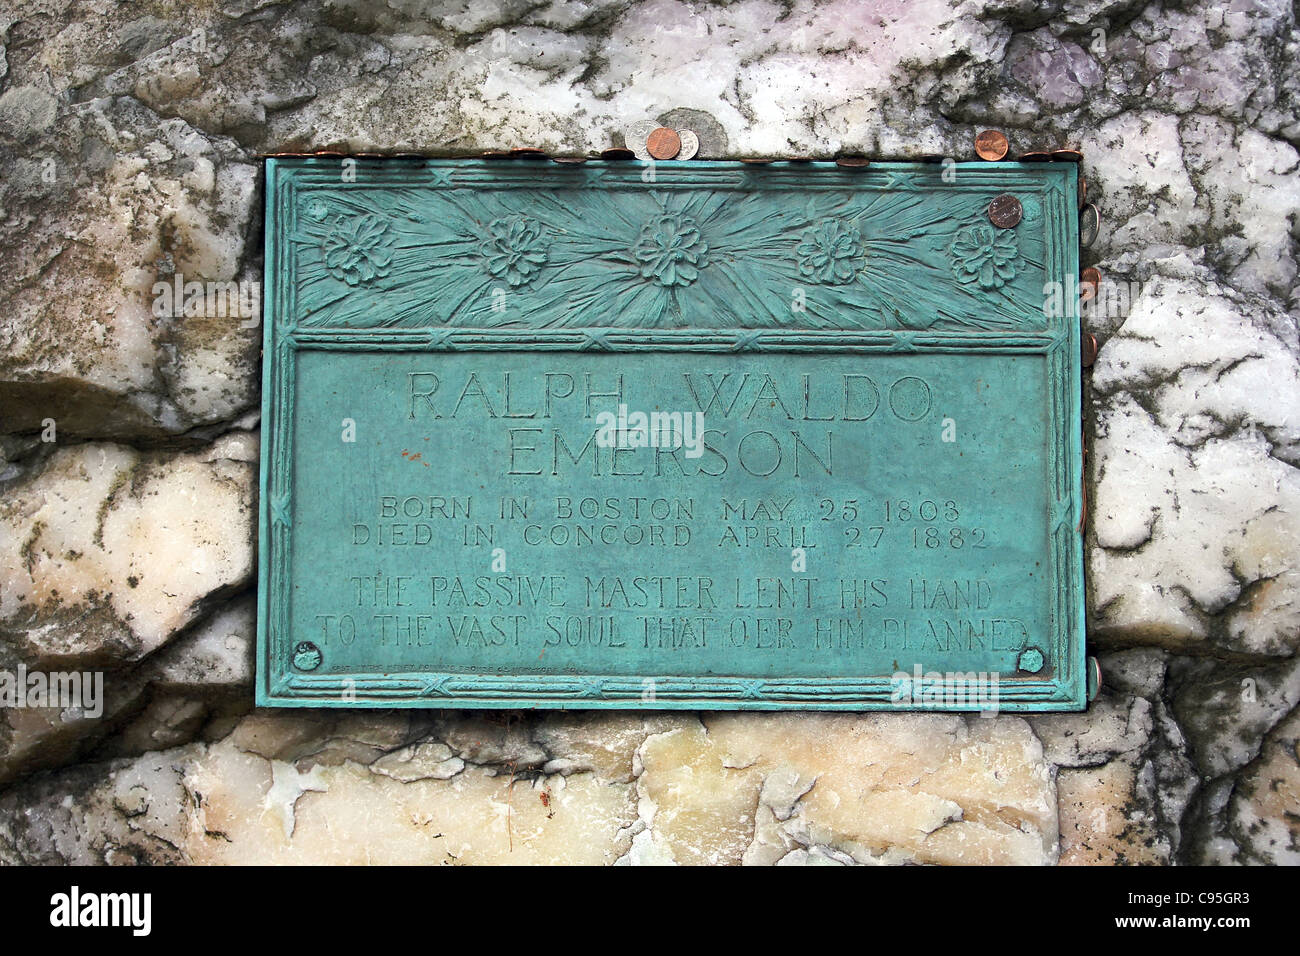 Sur la plaque en pierre de quartz qui marque la tombe de Ralph Waldo Emerson, dans le cimetière de Sleepy Hollow, à Concord, Massachusetts Banque D'Images